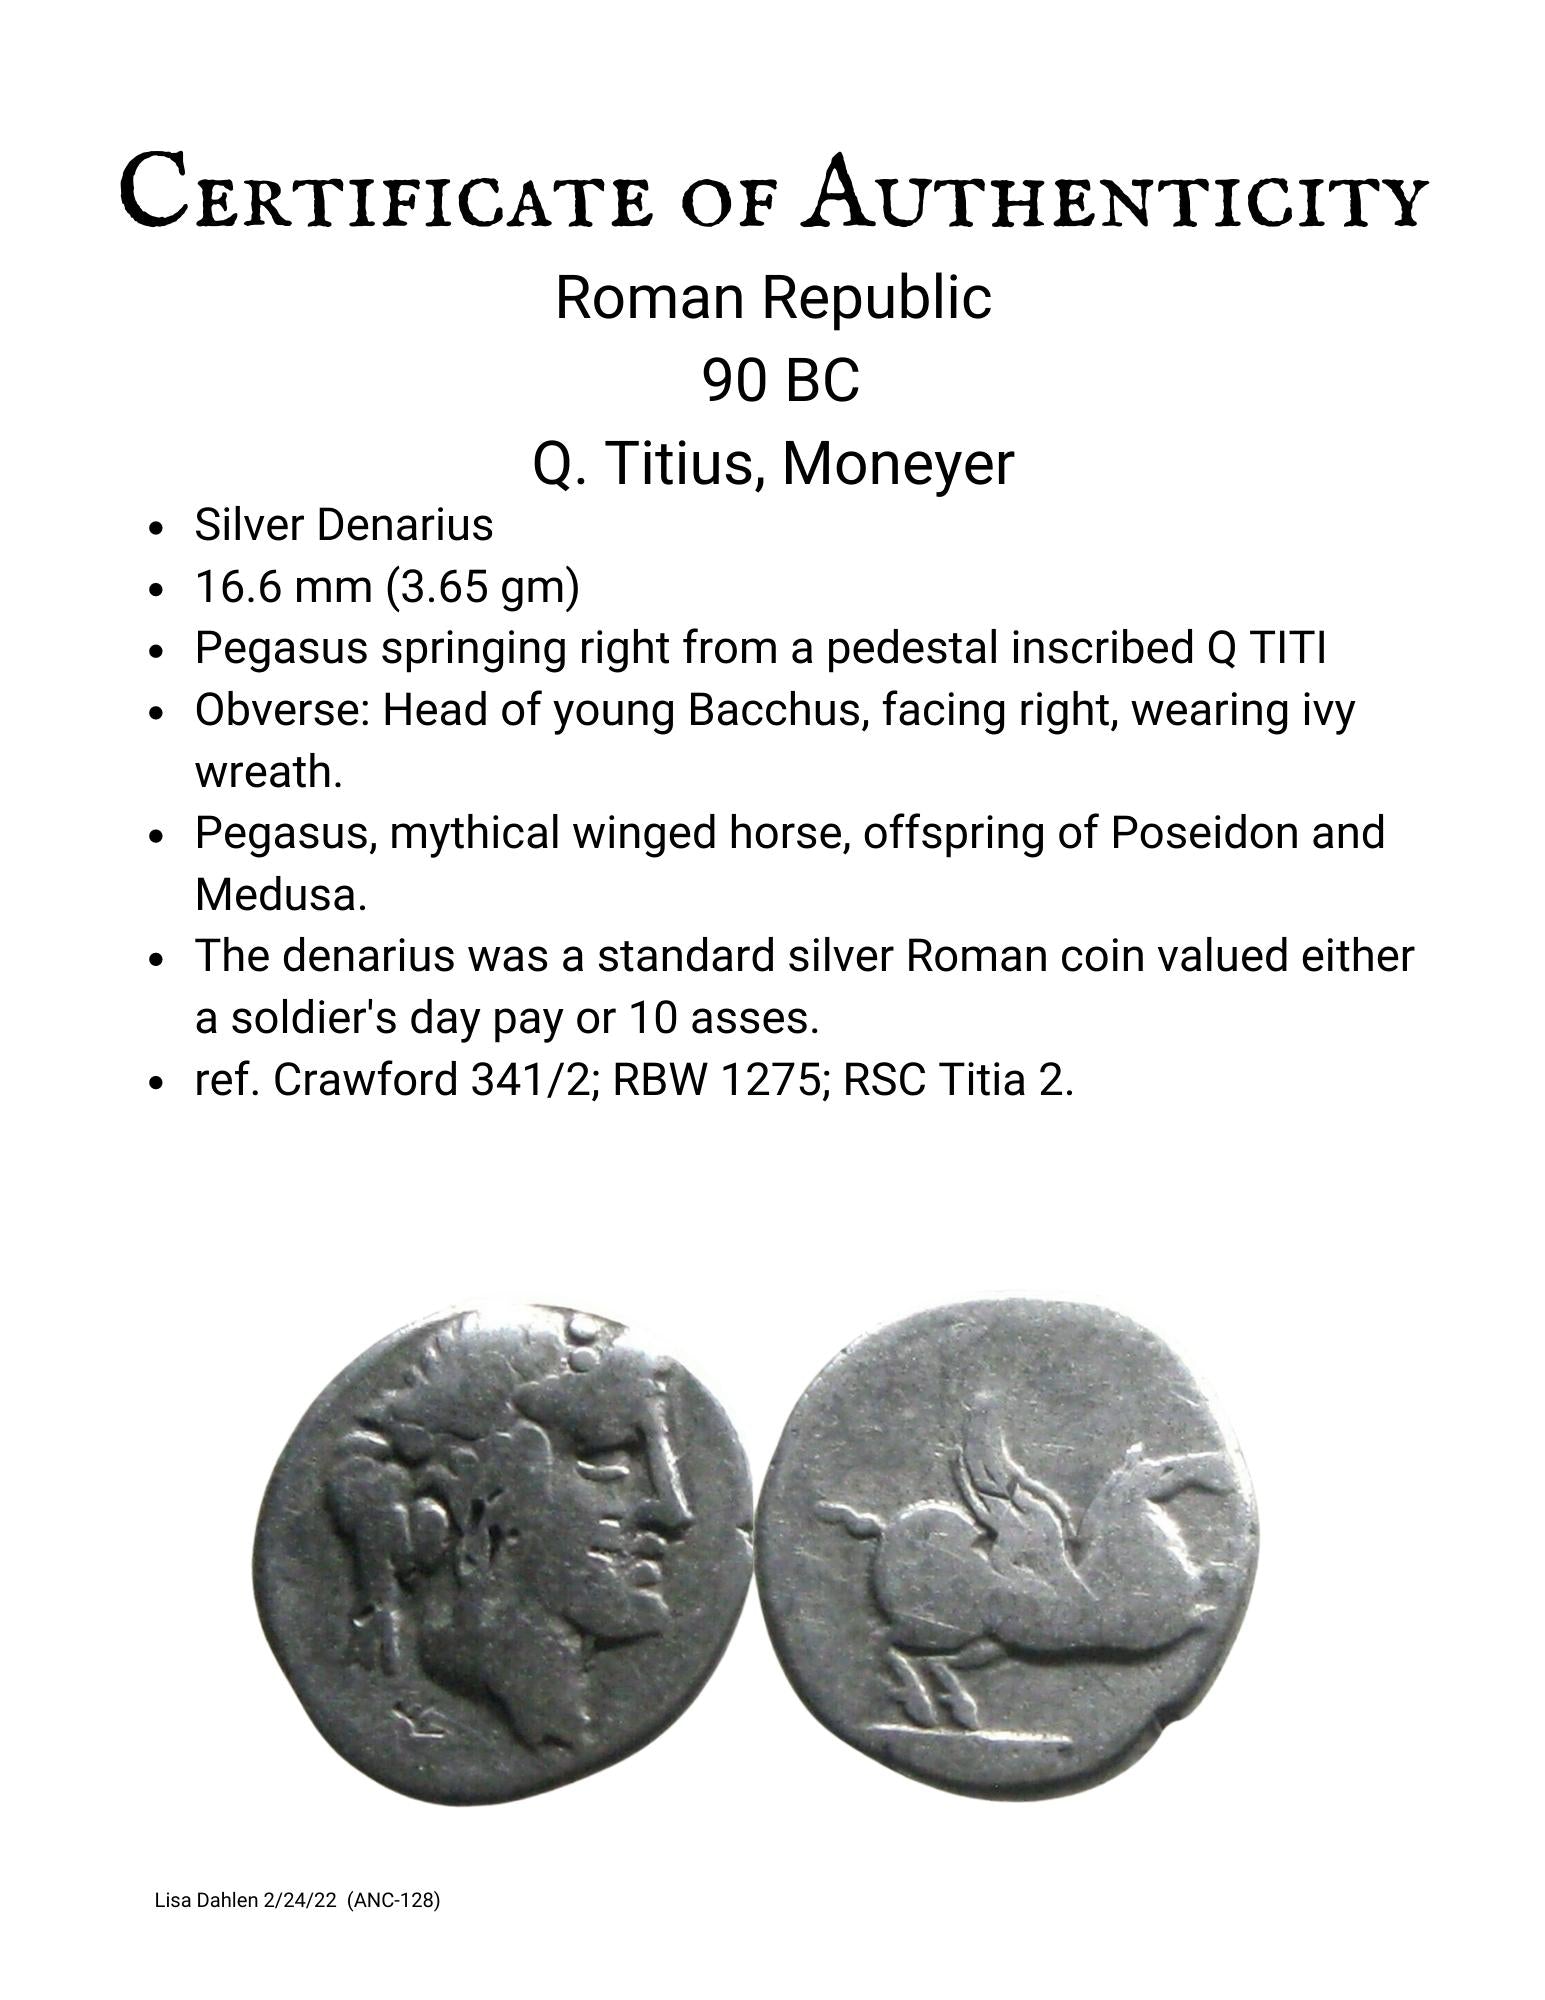 Roman Republic Titius Pegasus Bacchus silver denarius ancient coin certificate of authenticity